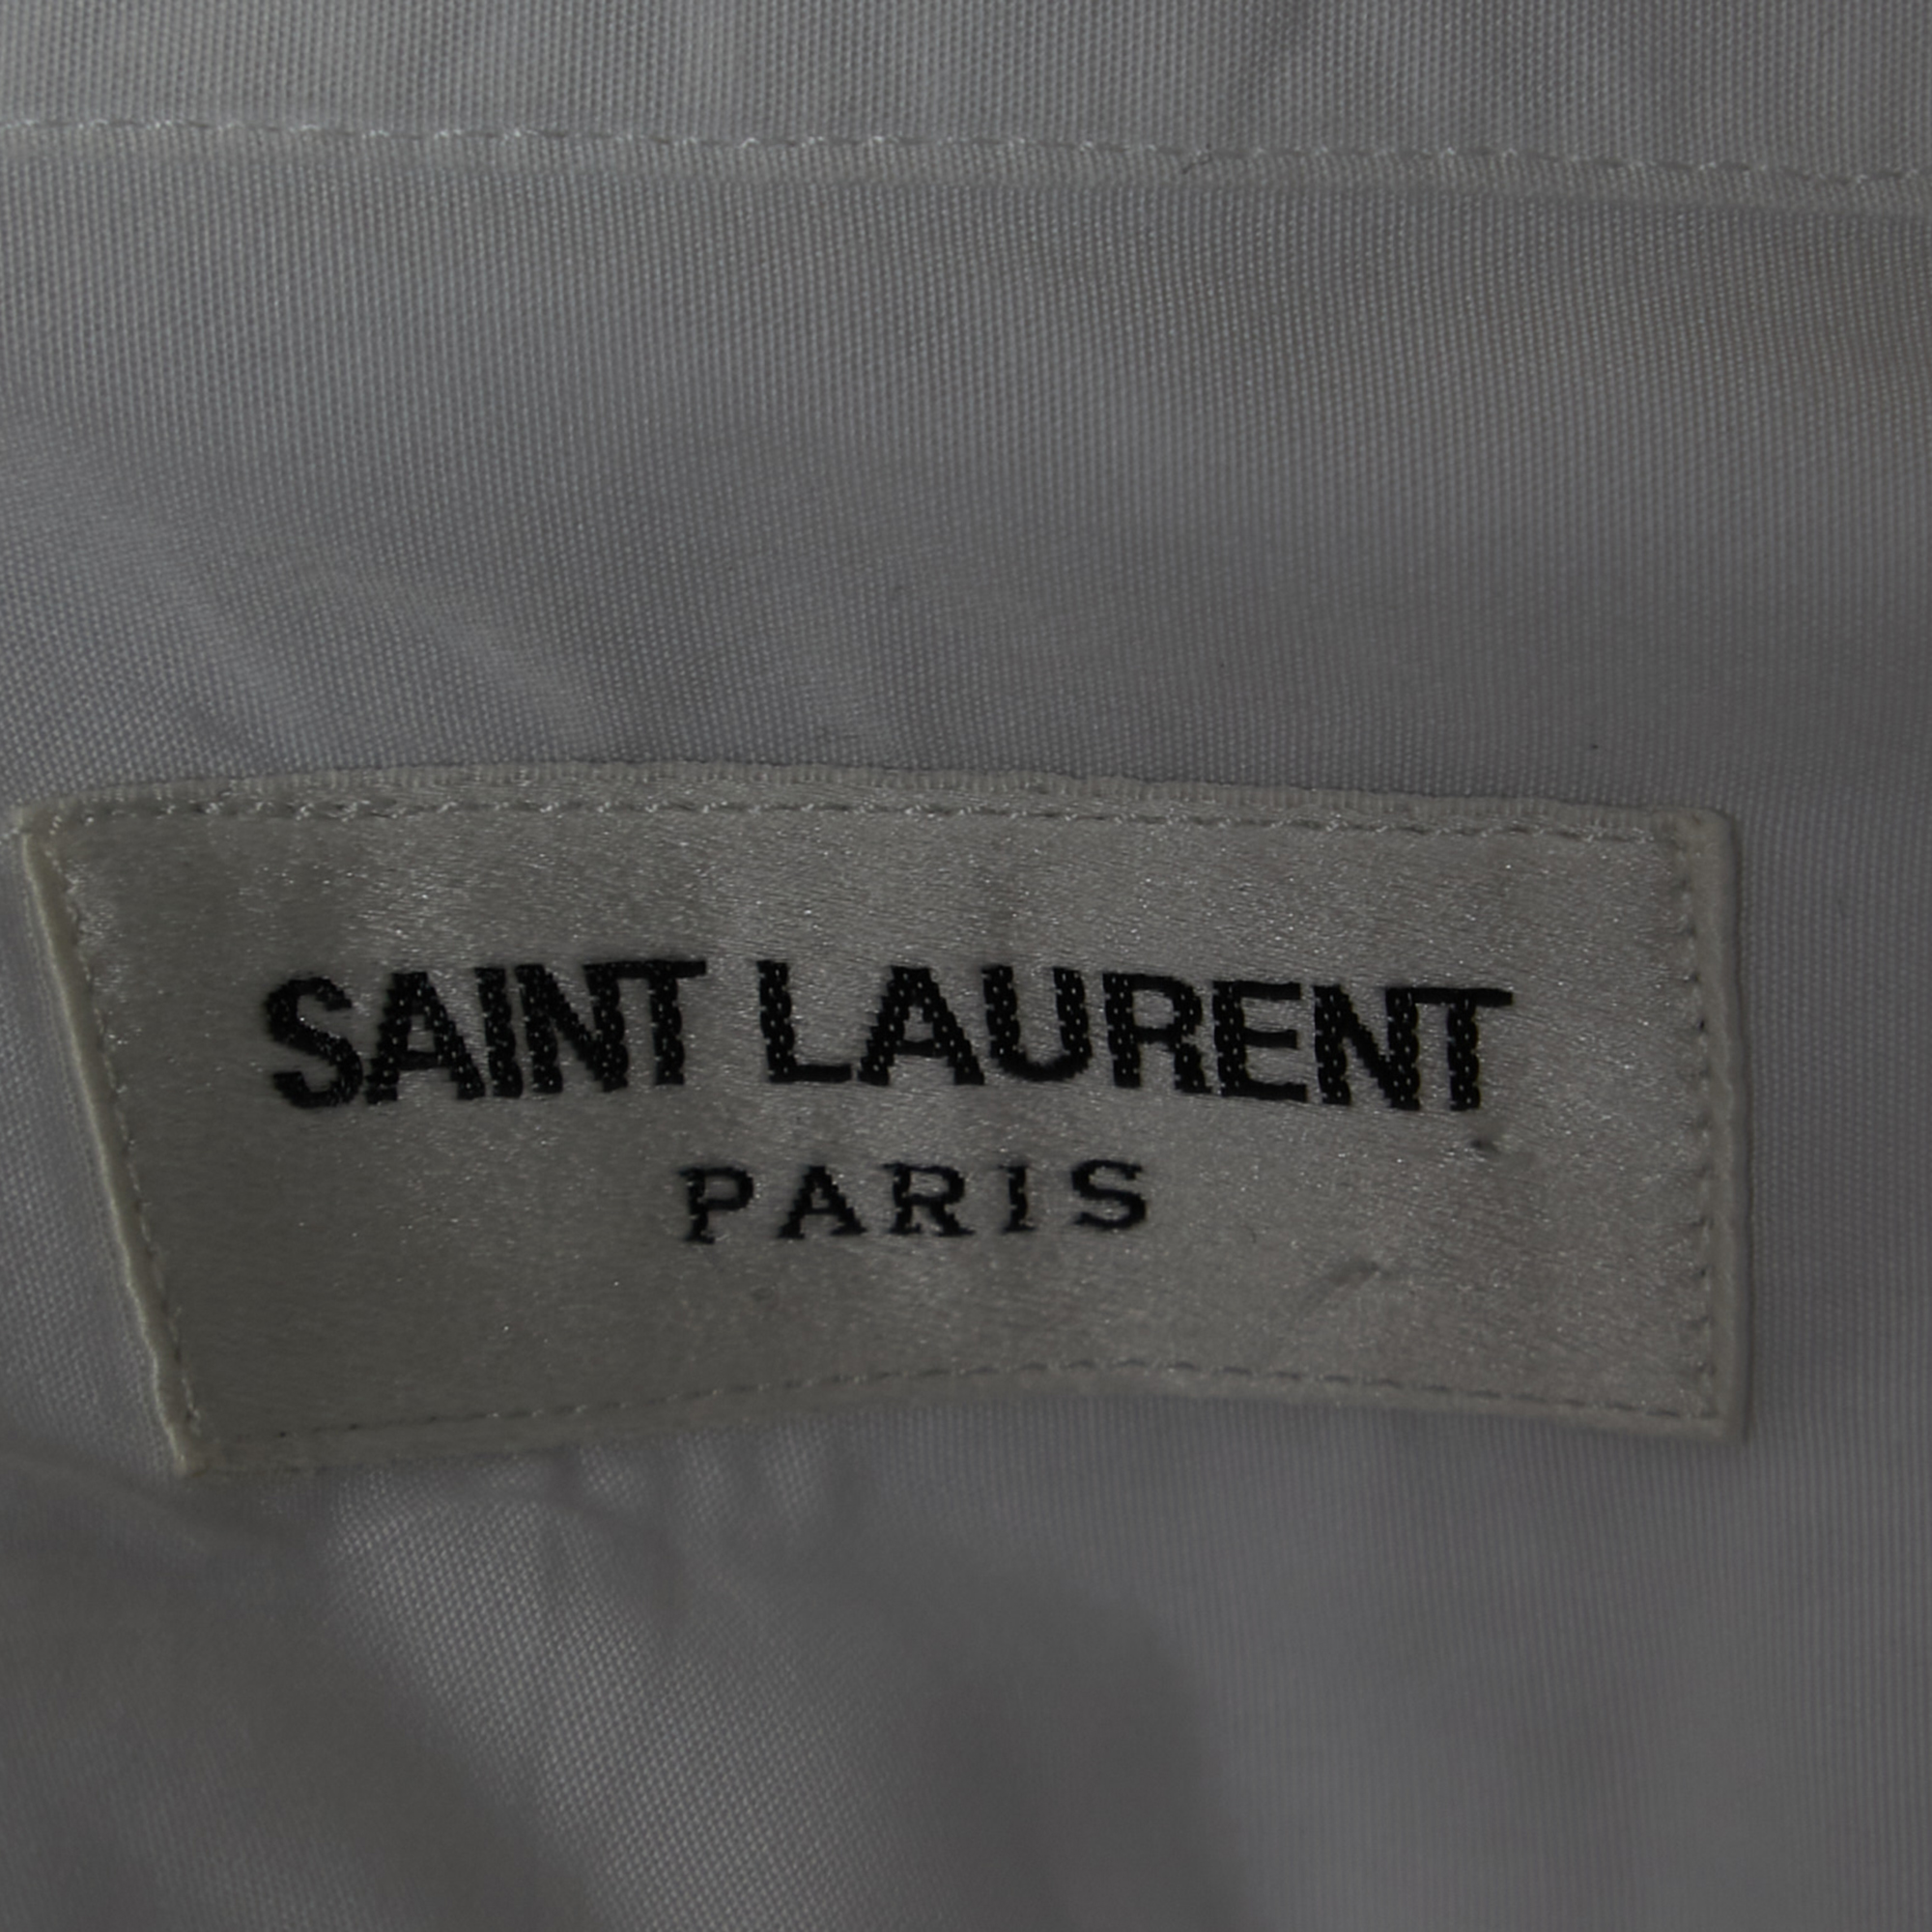 Saint Laurent White Cotton Button Front Shirt 2XL